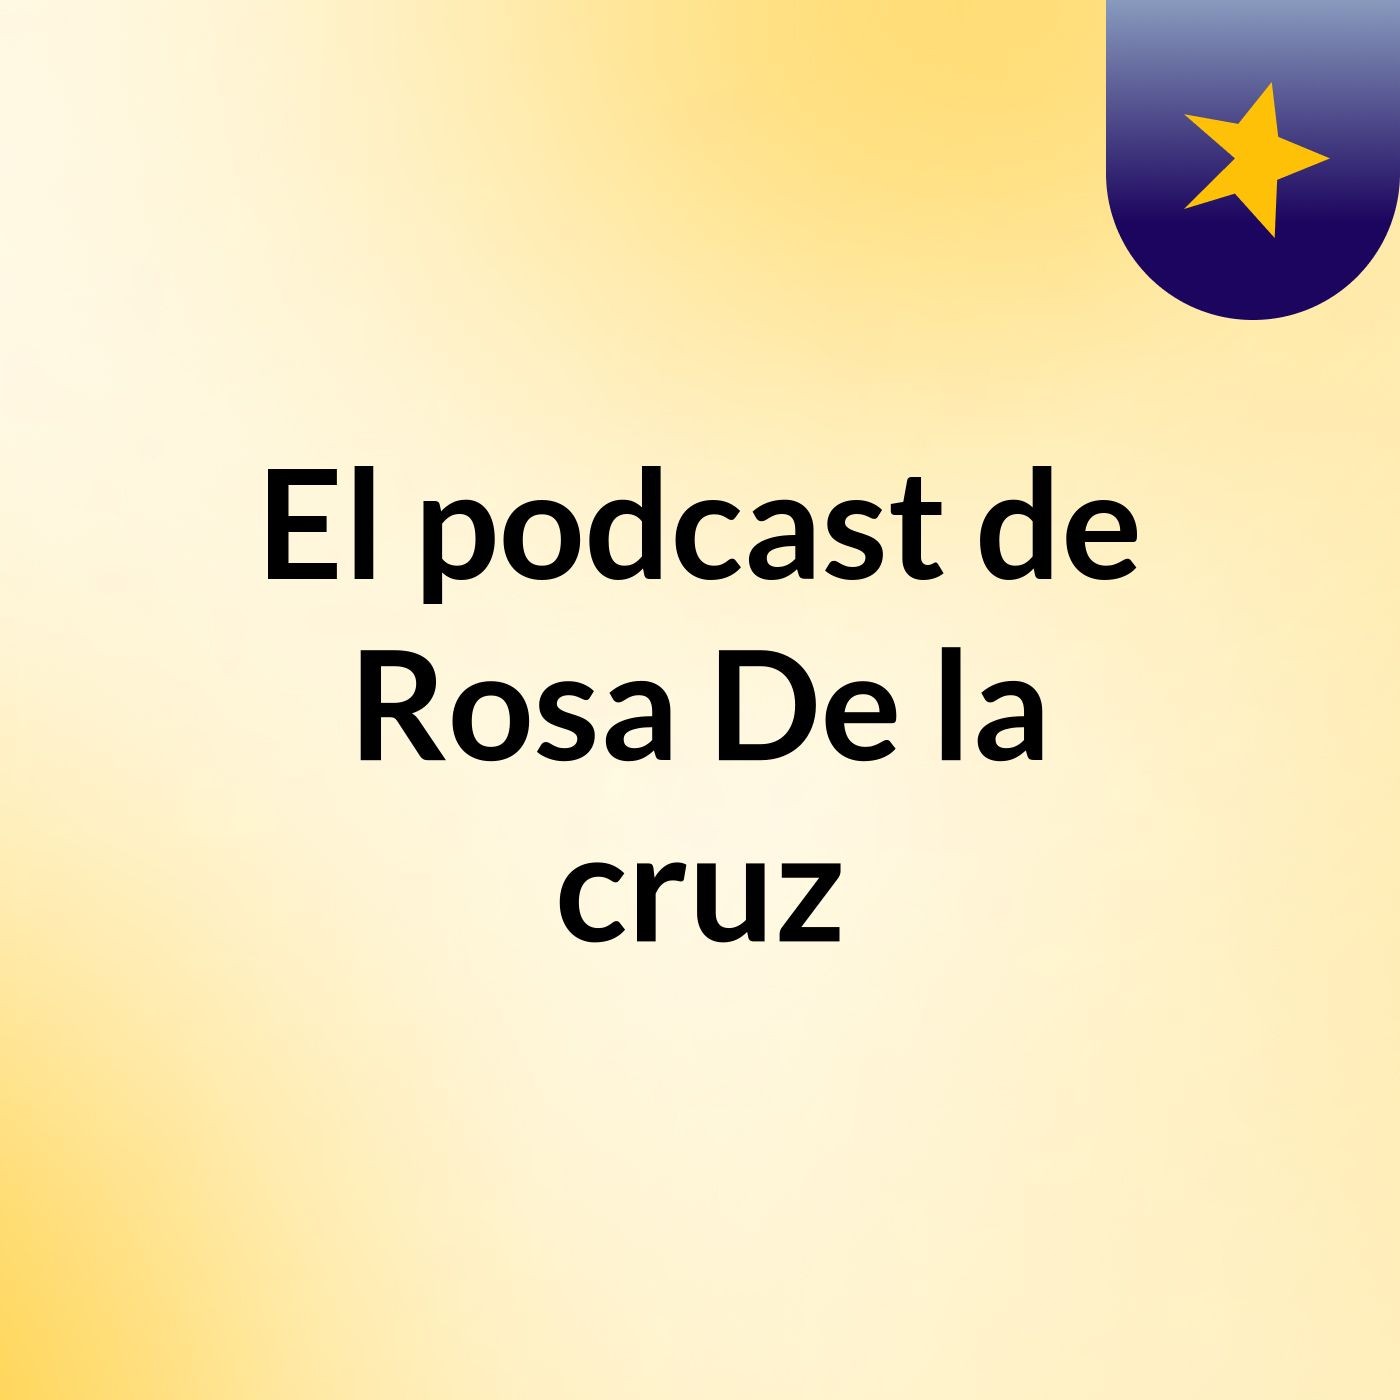 El podcast de Rosa De la cruz